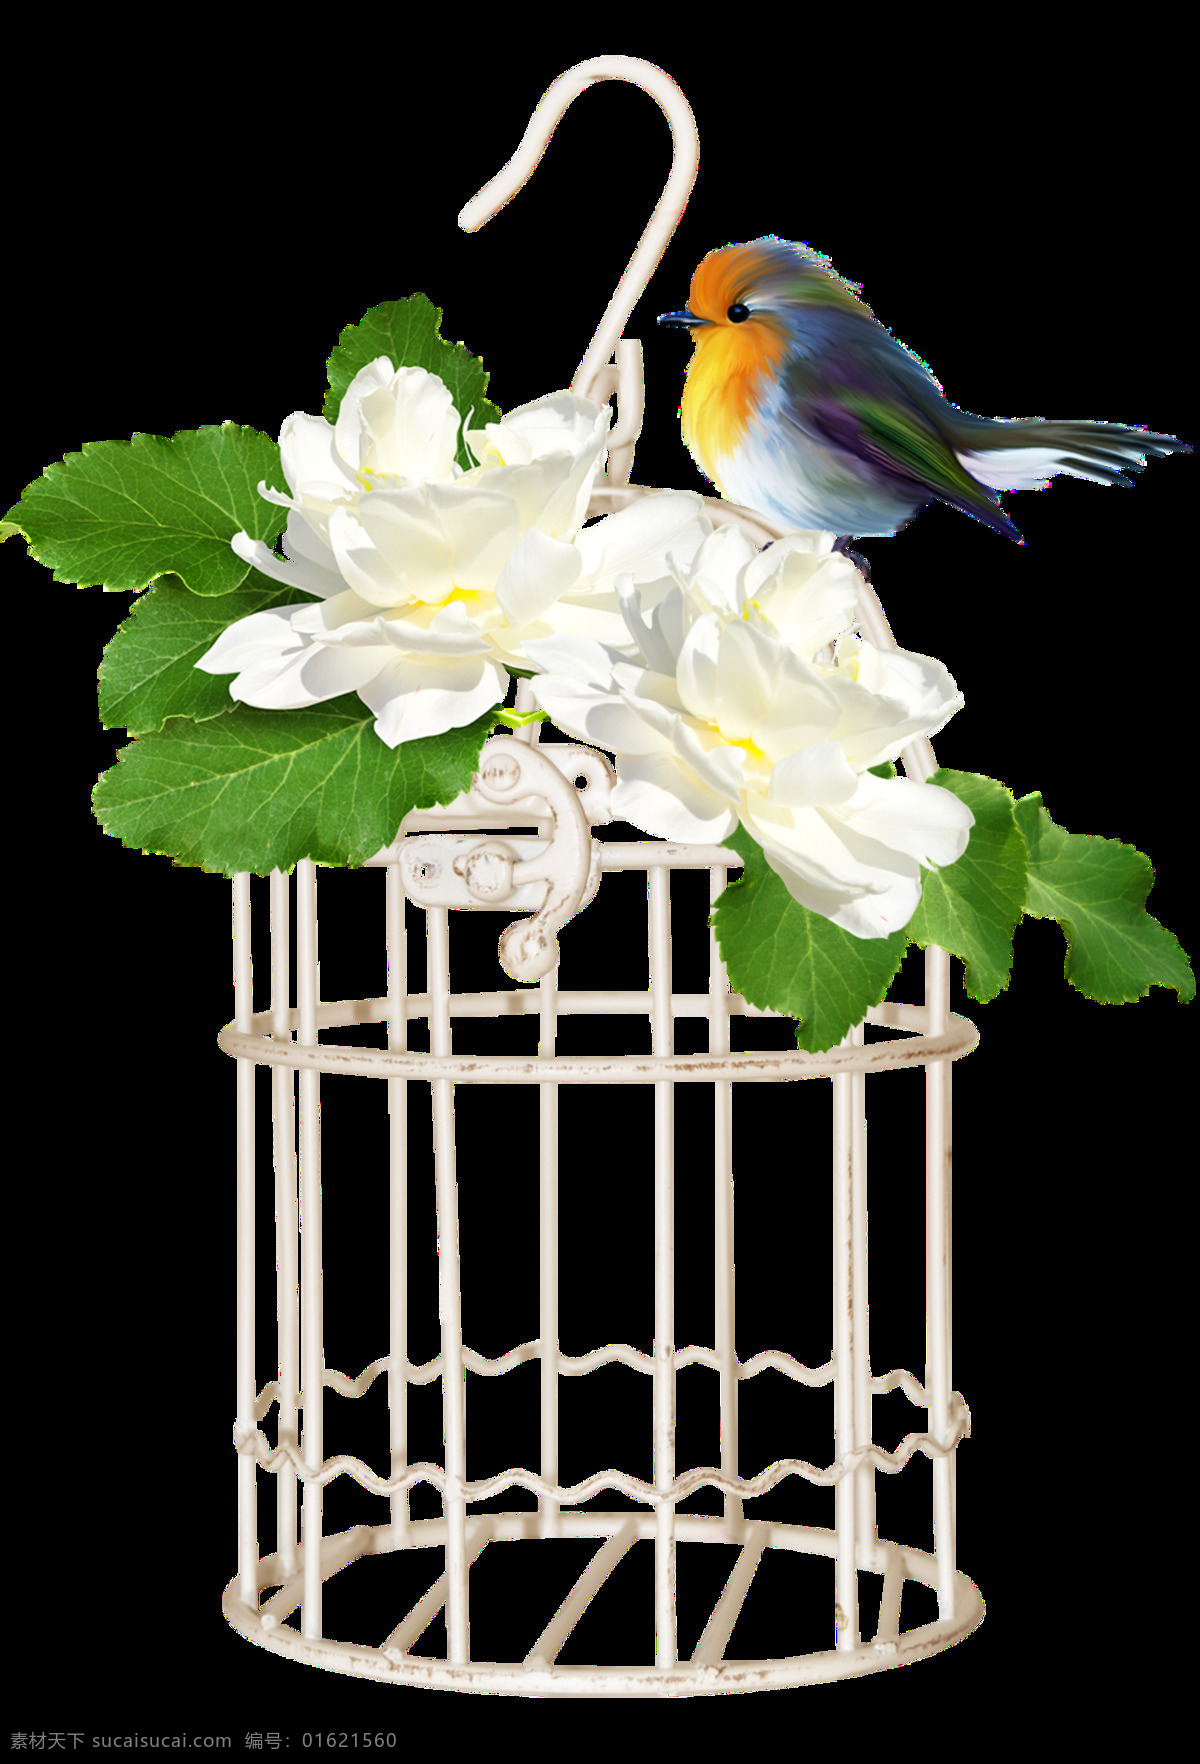 小 清新 彩绘 花卉 鸟笼 透明 彩鸟 铁框 树叶 白花 透明素材 免扣素材 装饰图片